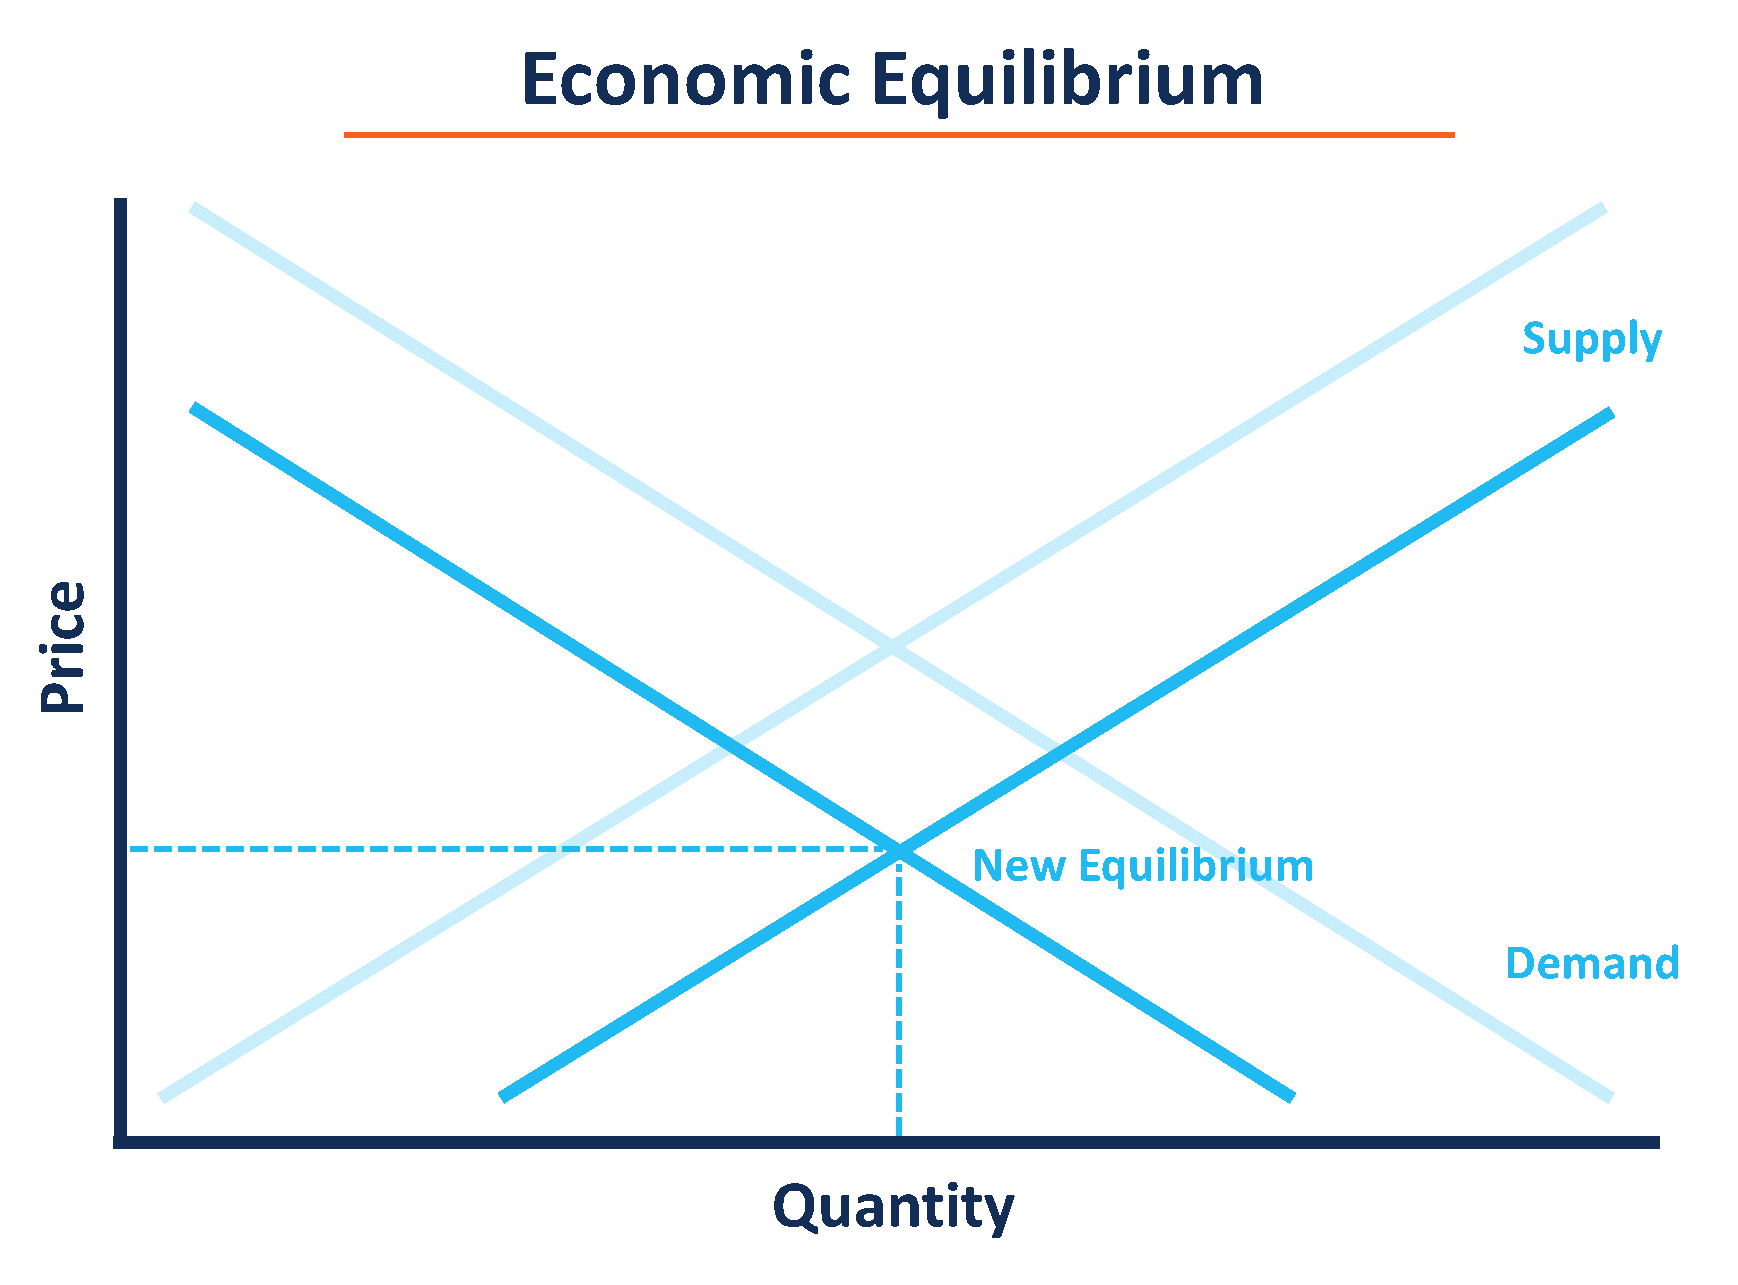 Economic Equilibrium - Rebalanced